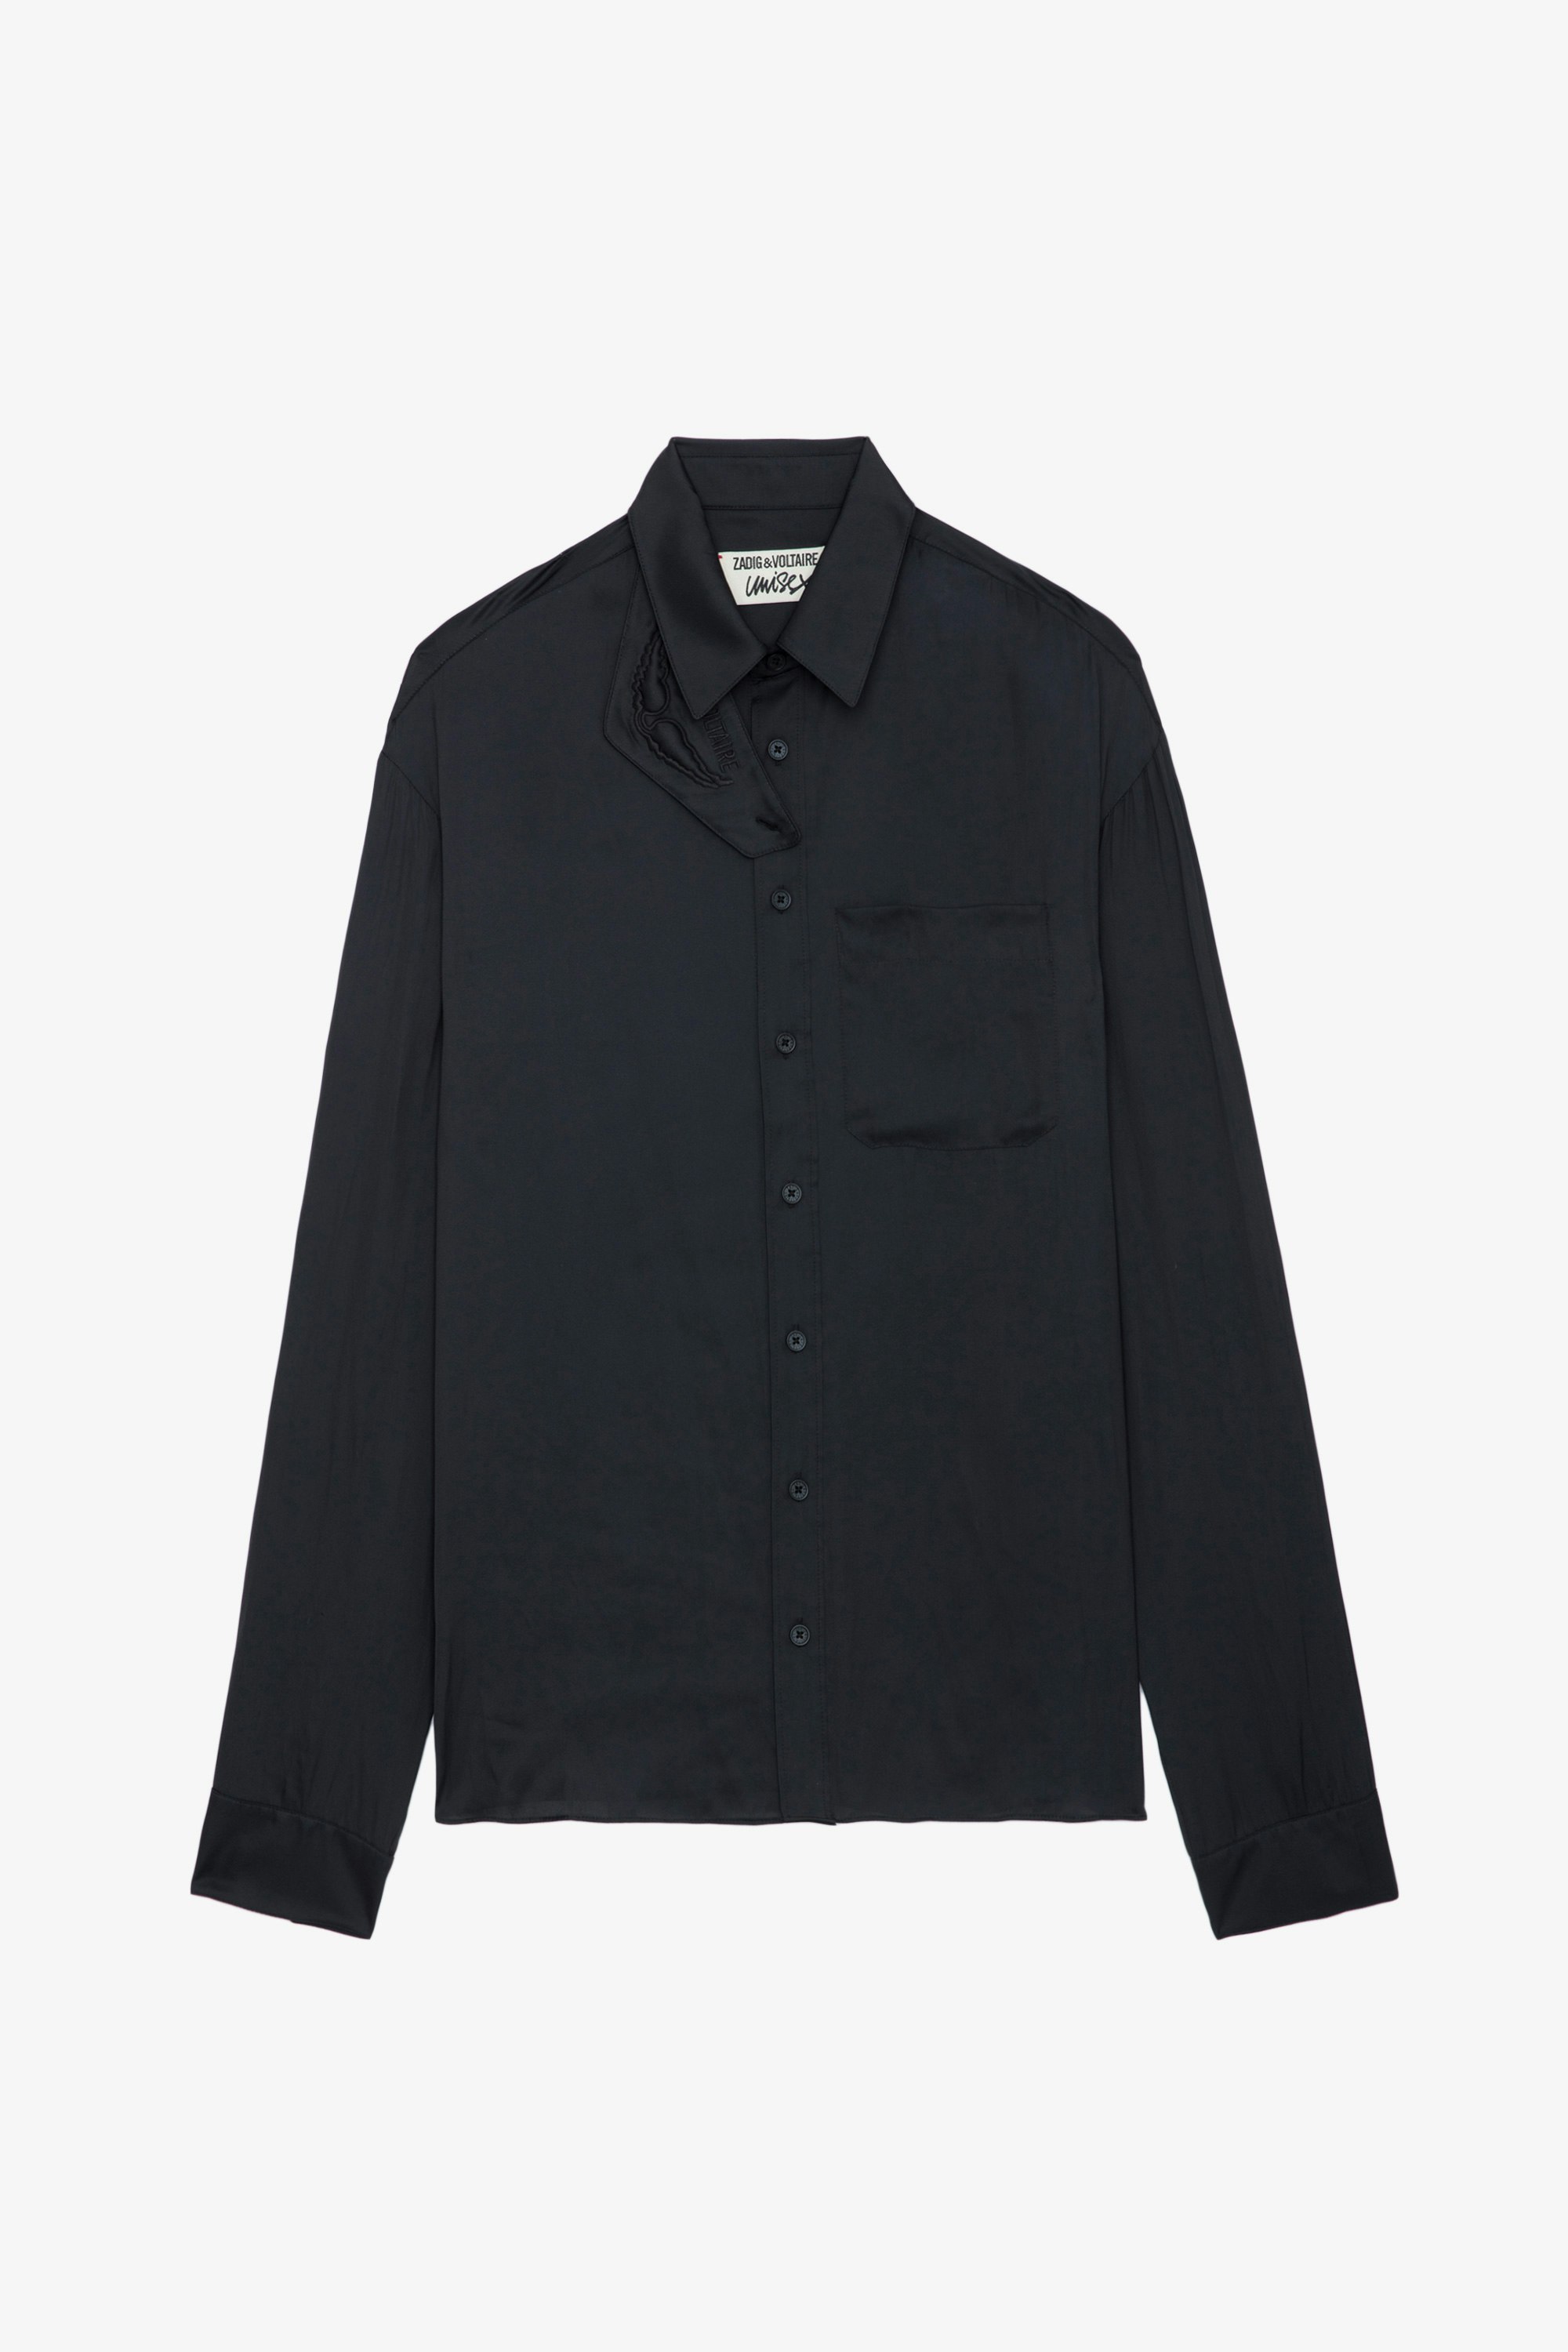 Hemd Tyrone Satin - Schwarzes Satinhemd mit Knopfvershcluss, Tasche und abnehmbarem Schutzkragen.